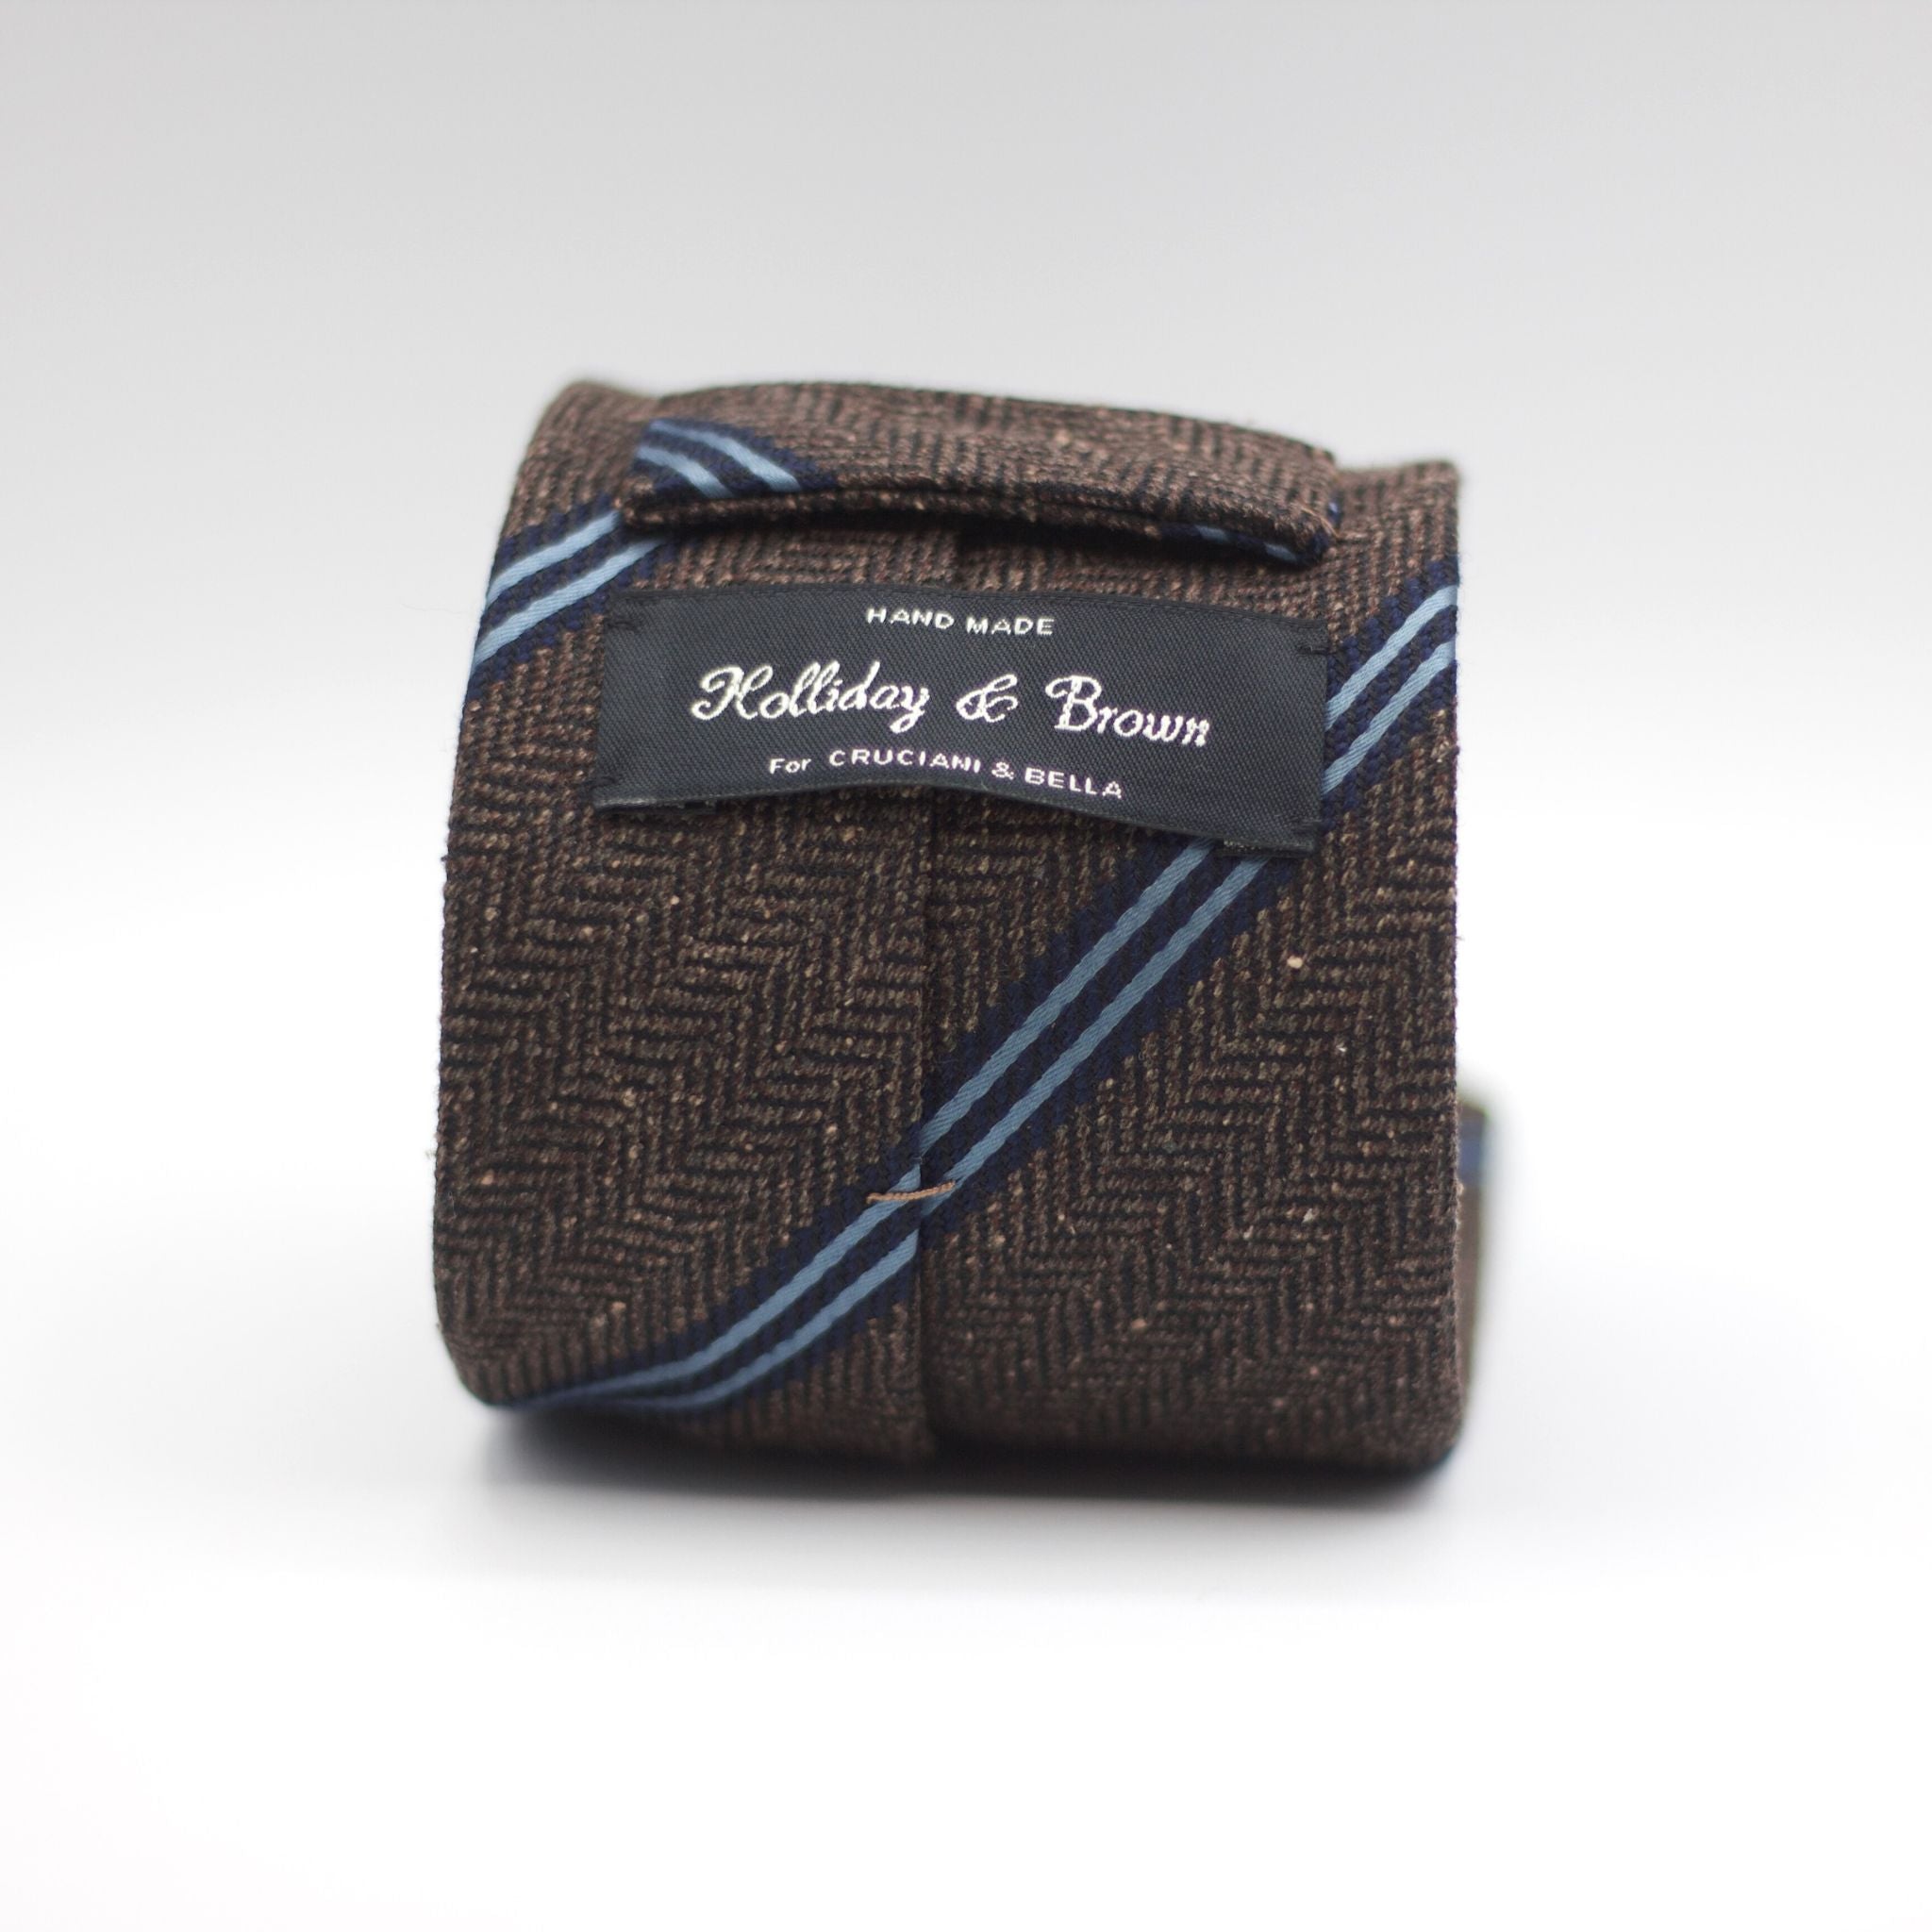 Holliday & Brown - Woven Jacquard Silk/Wool - Brown herringbone, blue stripes tie